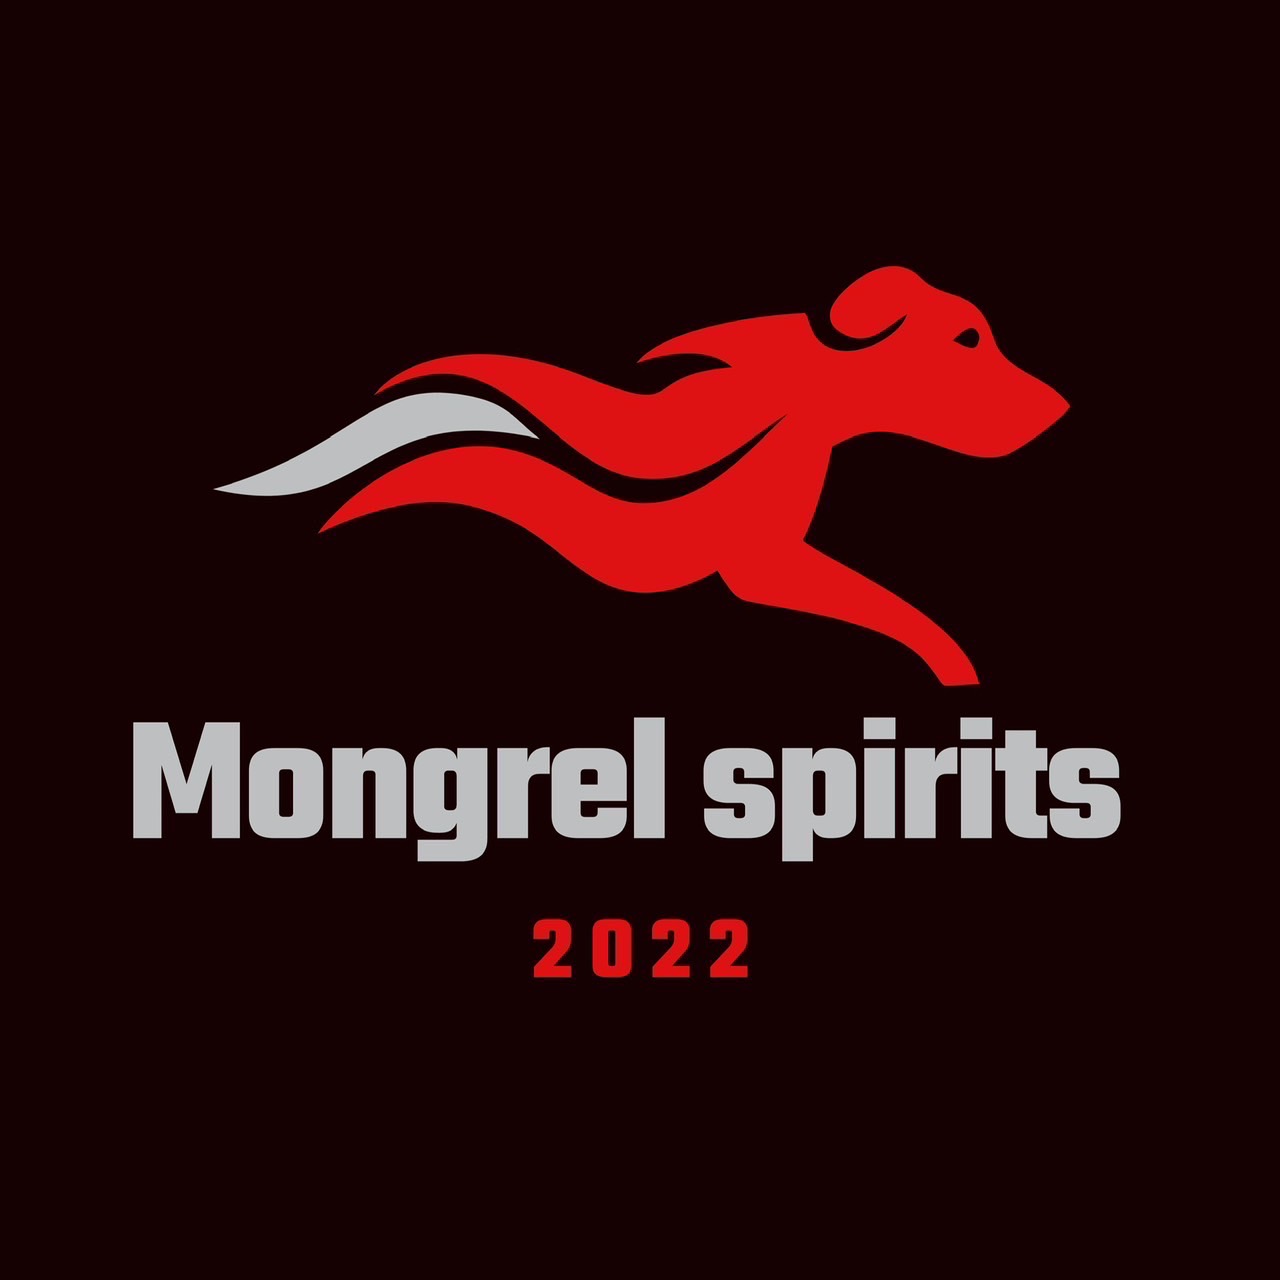 Mongrel spirits